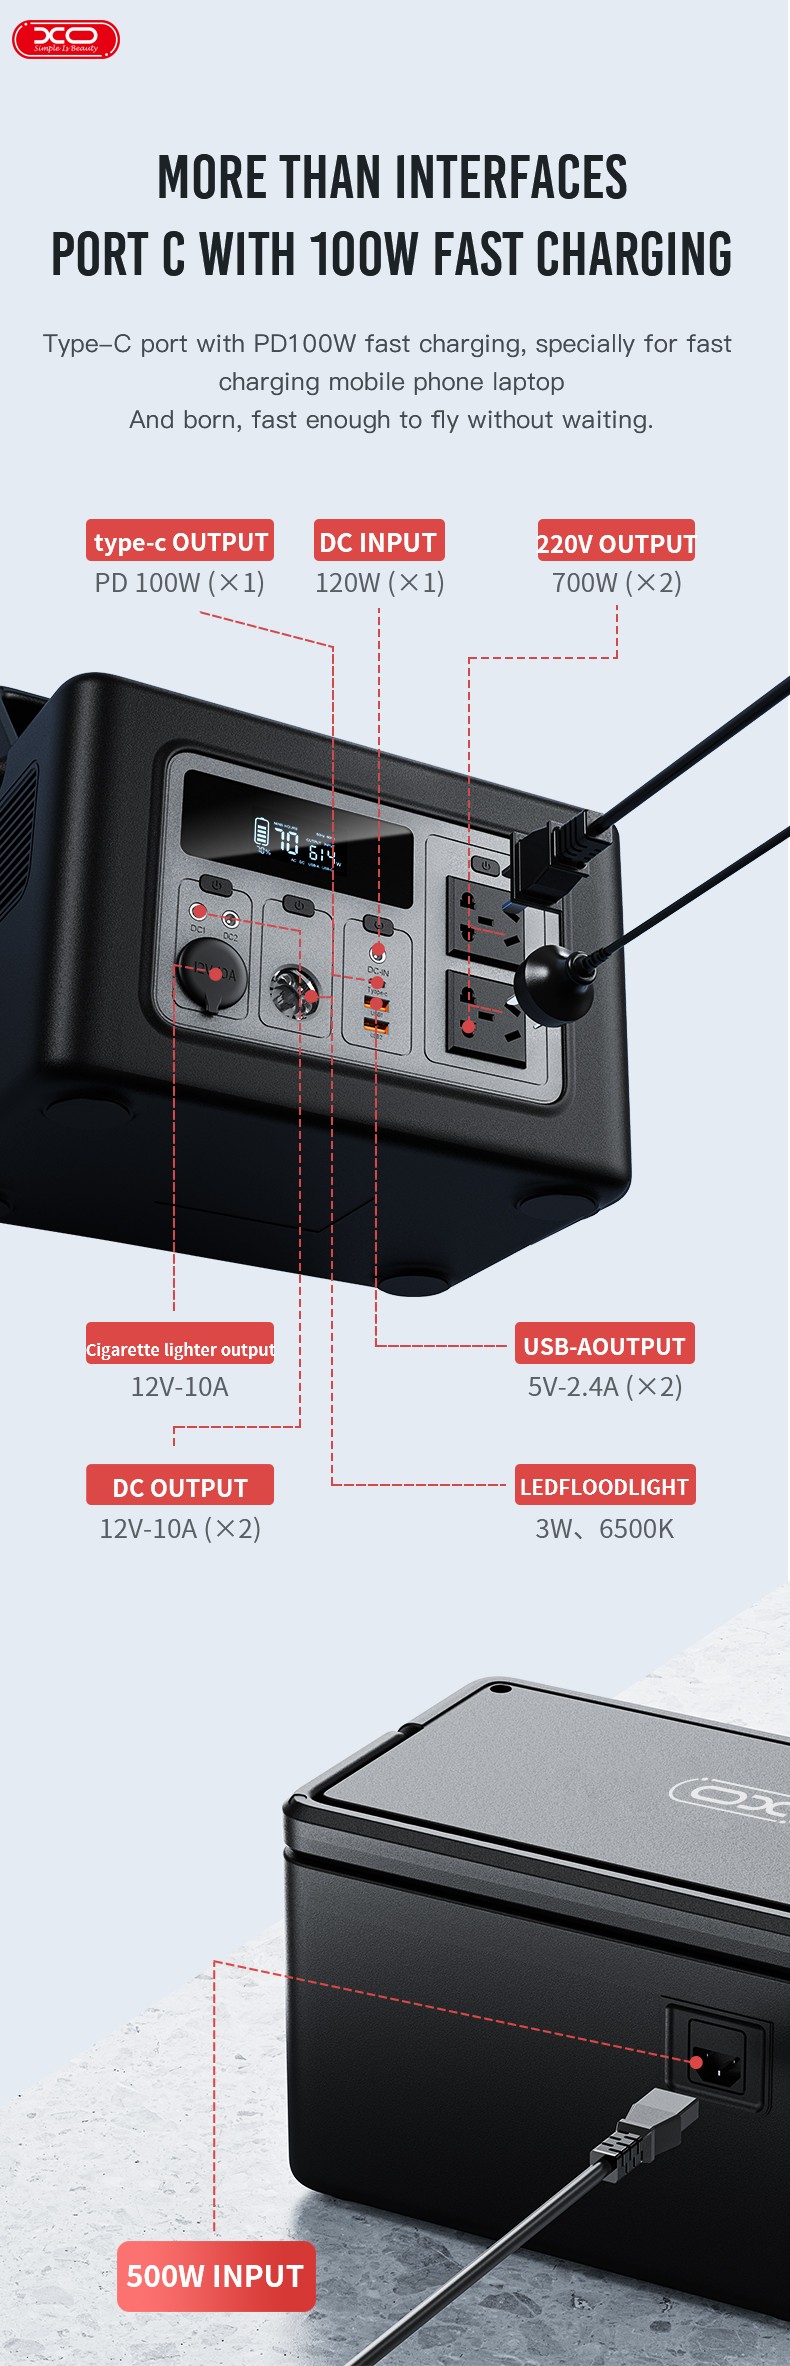 Портативна зарядна станція XO PSA-700 614Wh відгуки - зображення 5